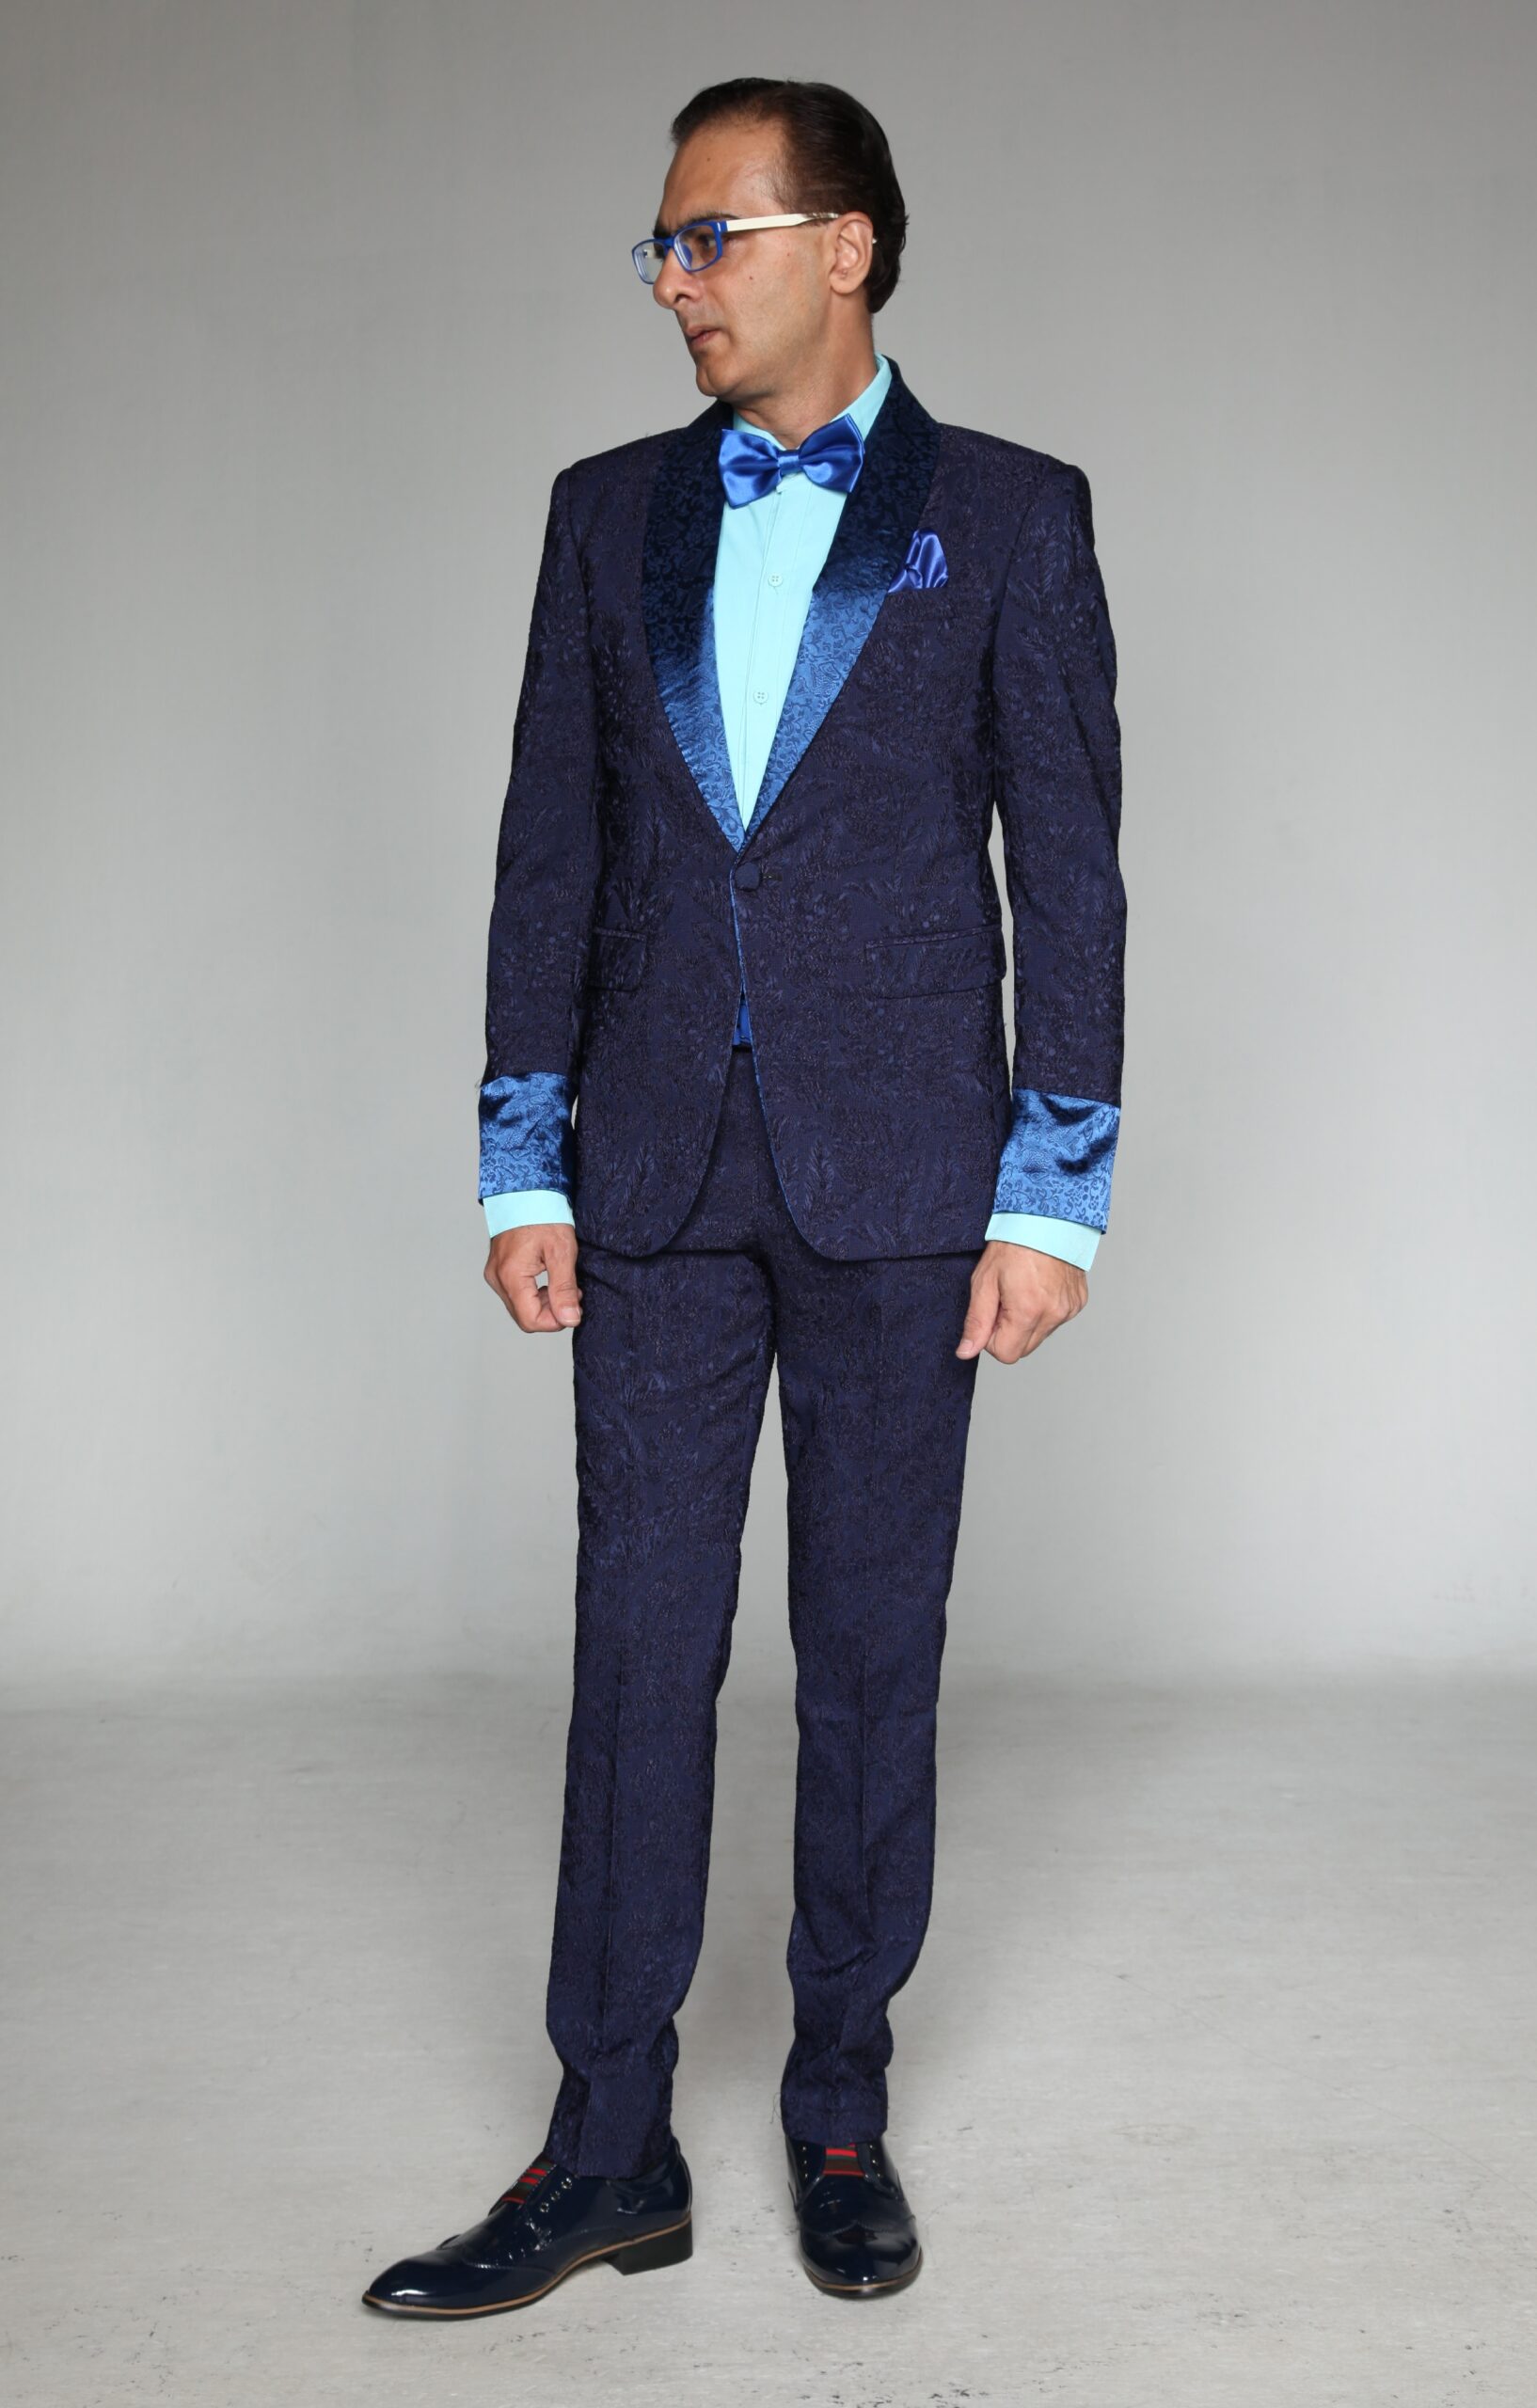 Mst 5023 03 Rent Rental Hire Tuxedo Suit Black Tie Suit Designer Suits Shop Tailor Tailors Singapore Wedding